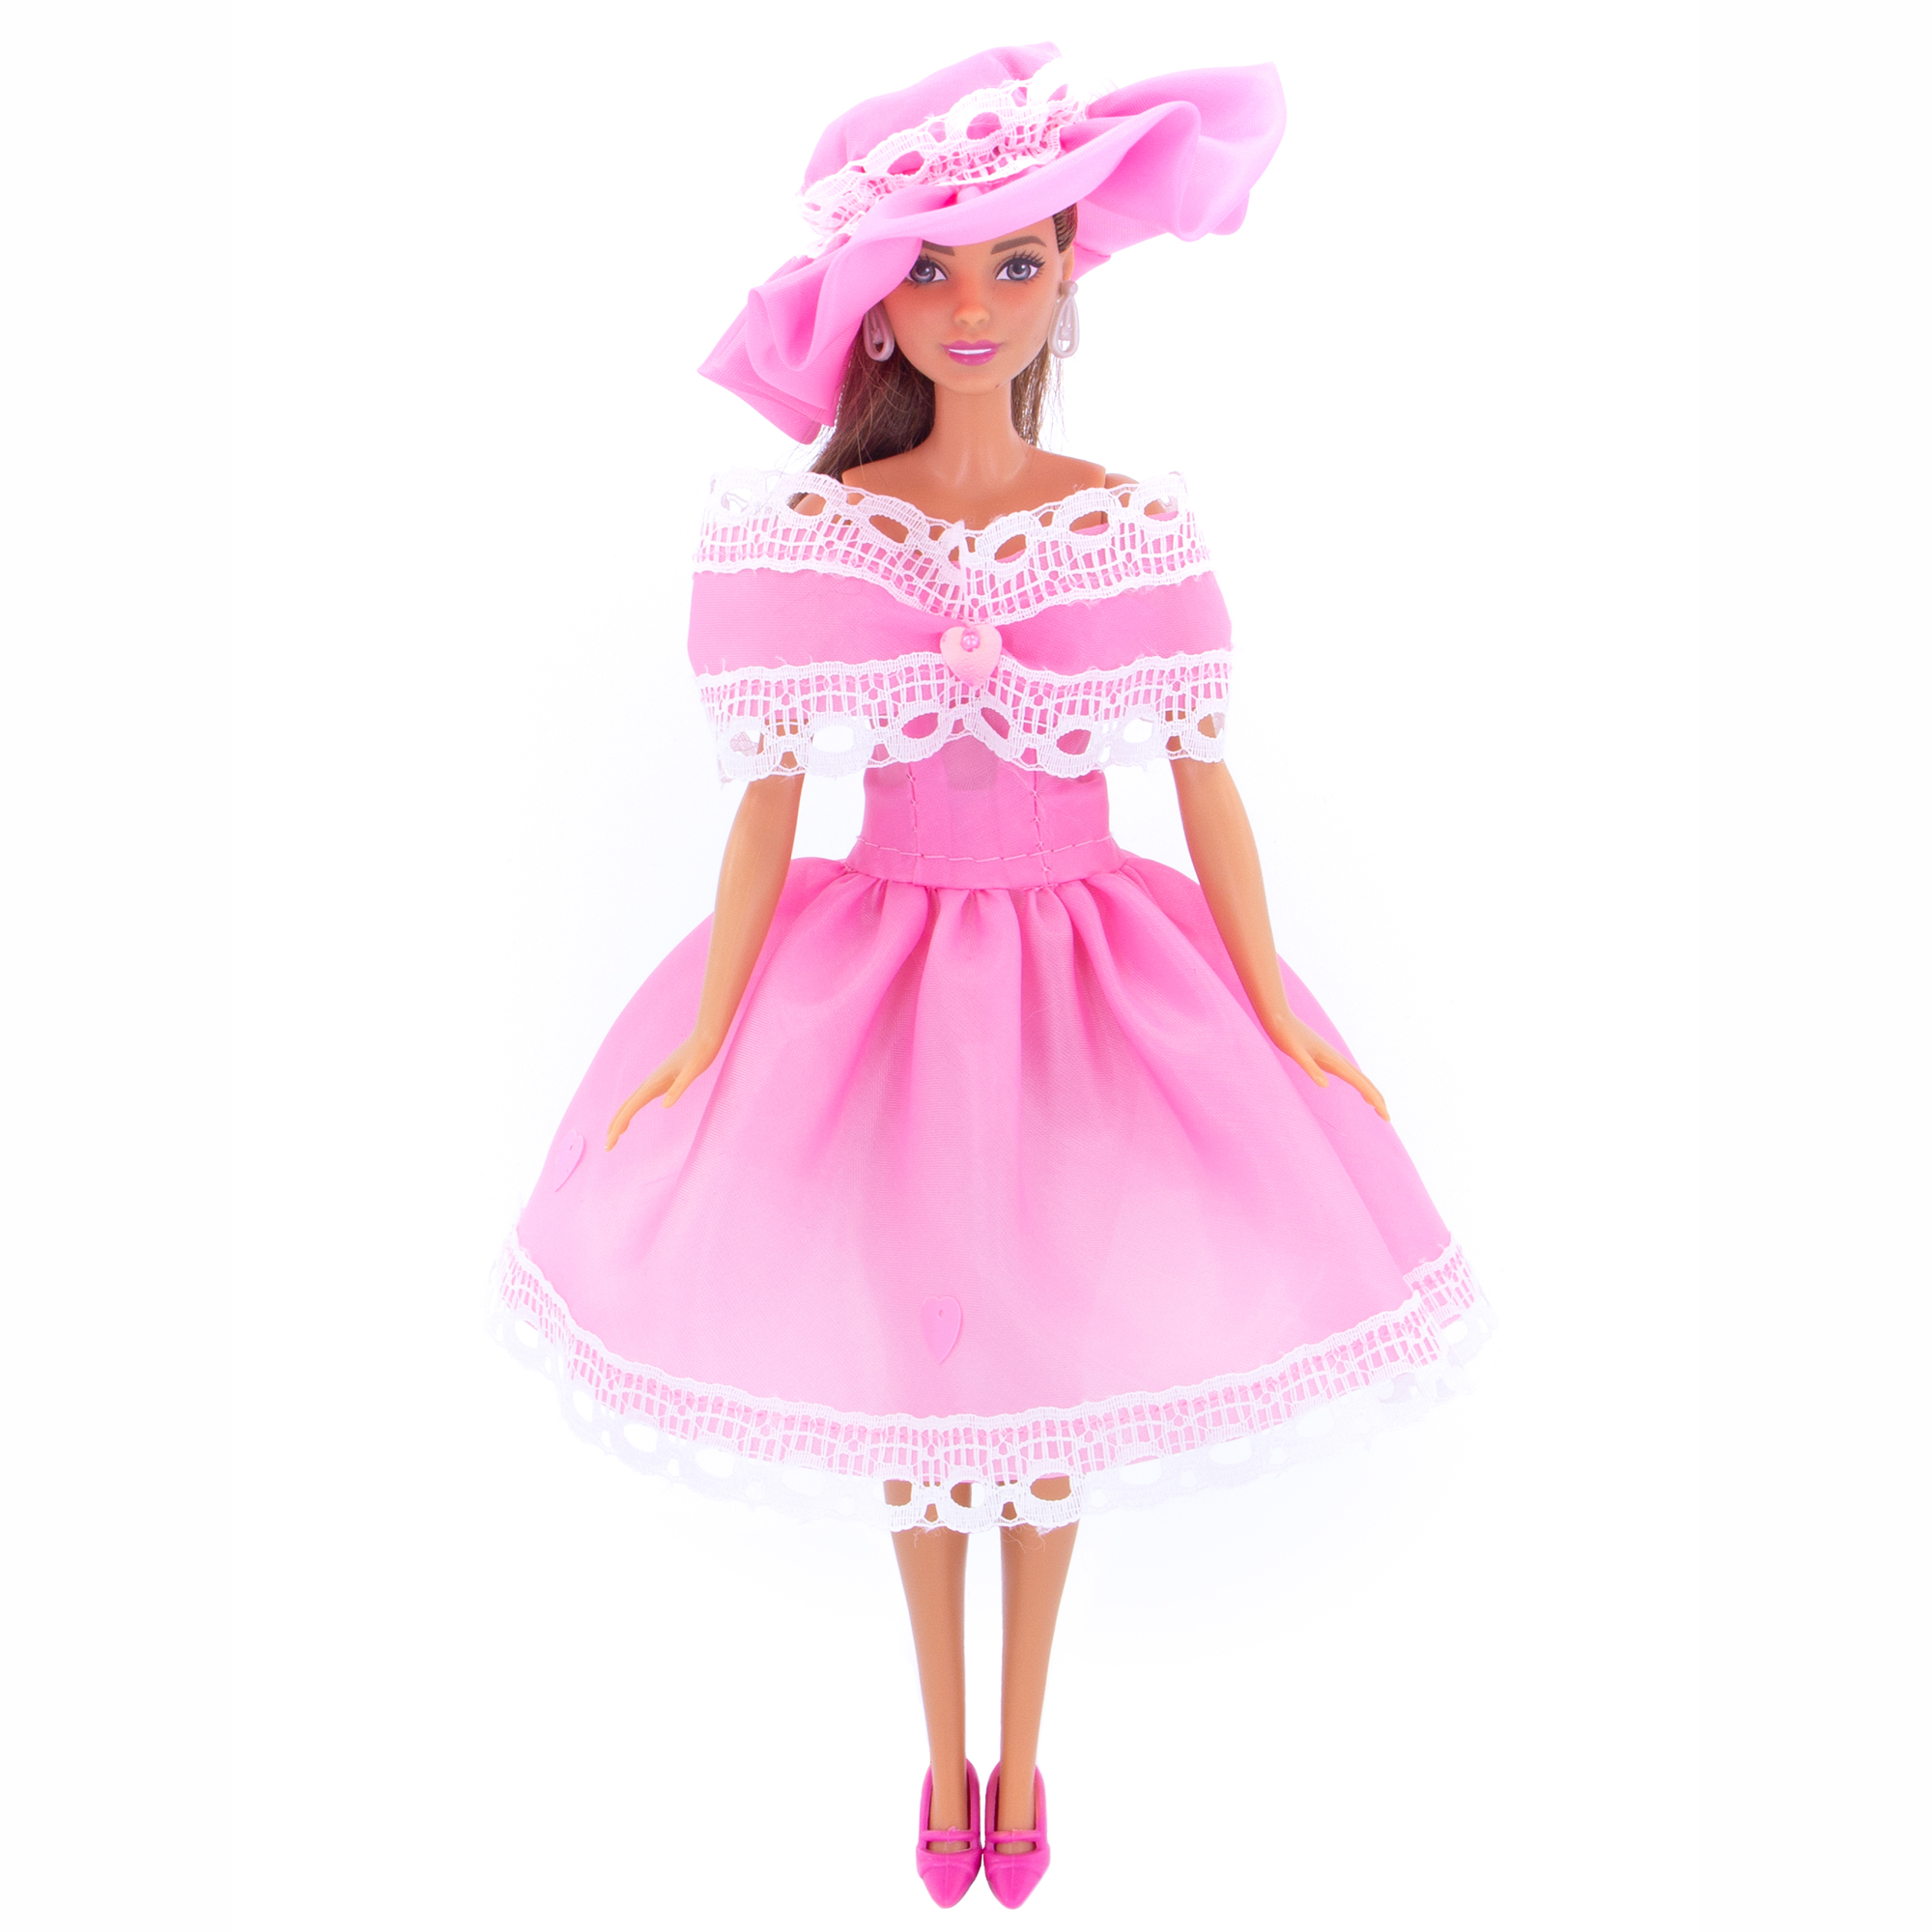 Легкое платье из шелка Модница для куклы 29 см 1401 розовый 1401розовый - фото 5